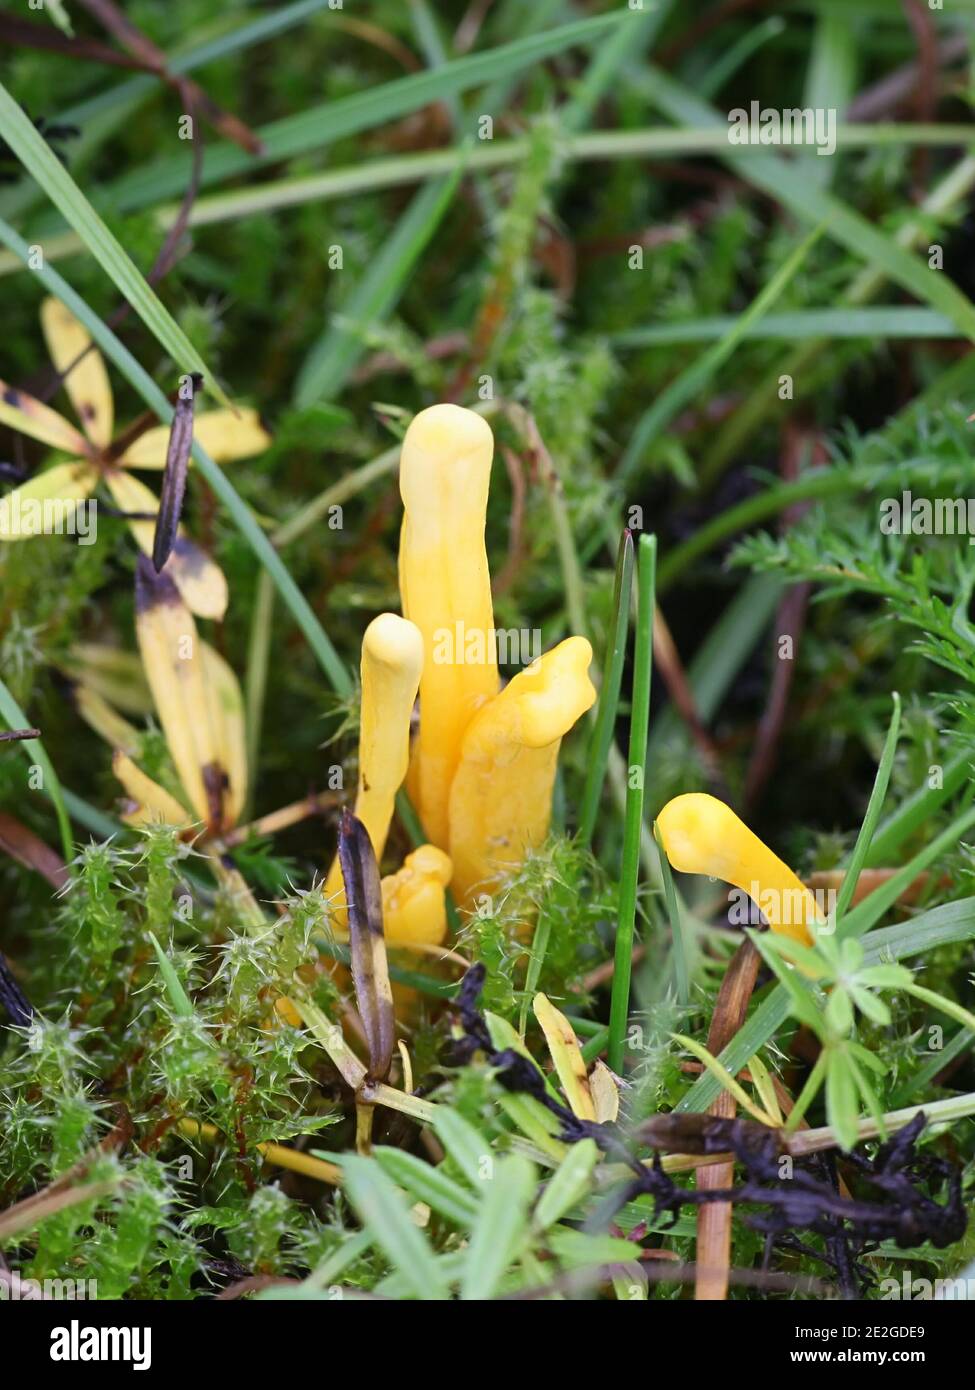 Clavulinopsis laeticolor, connu sous le nom de beau club champignon, champignon sauvage de Finlande Banque D'Images